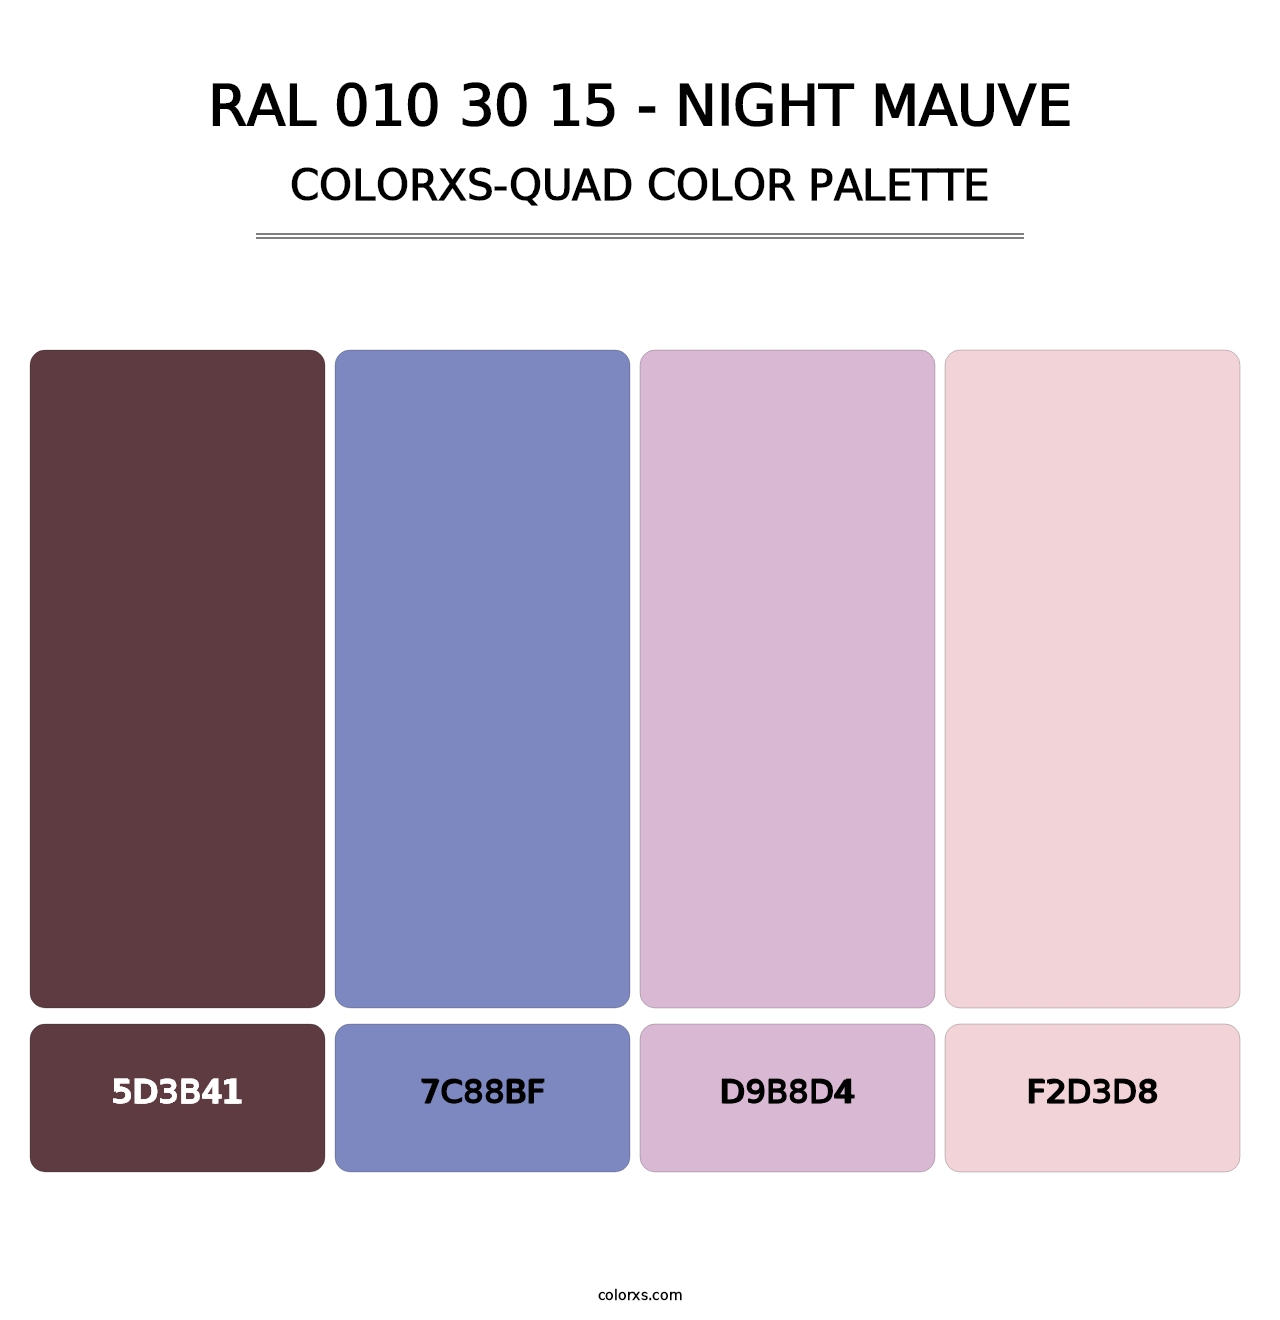 RAL 010 30 15 - Night Mauve - Colorxs Quad Palette